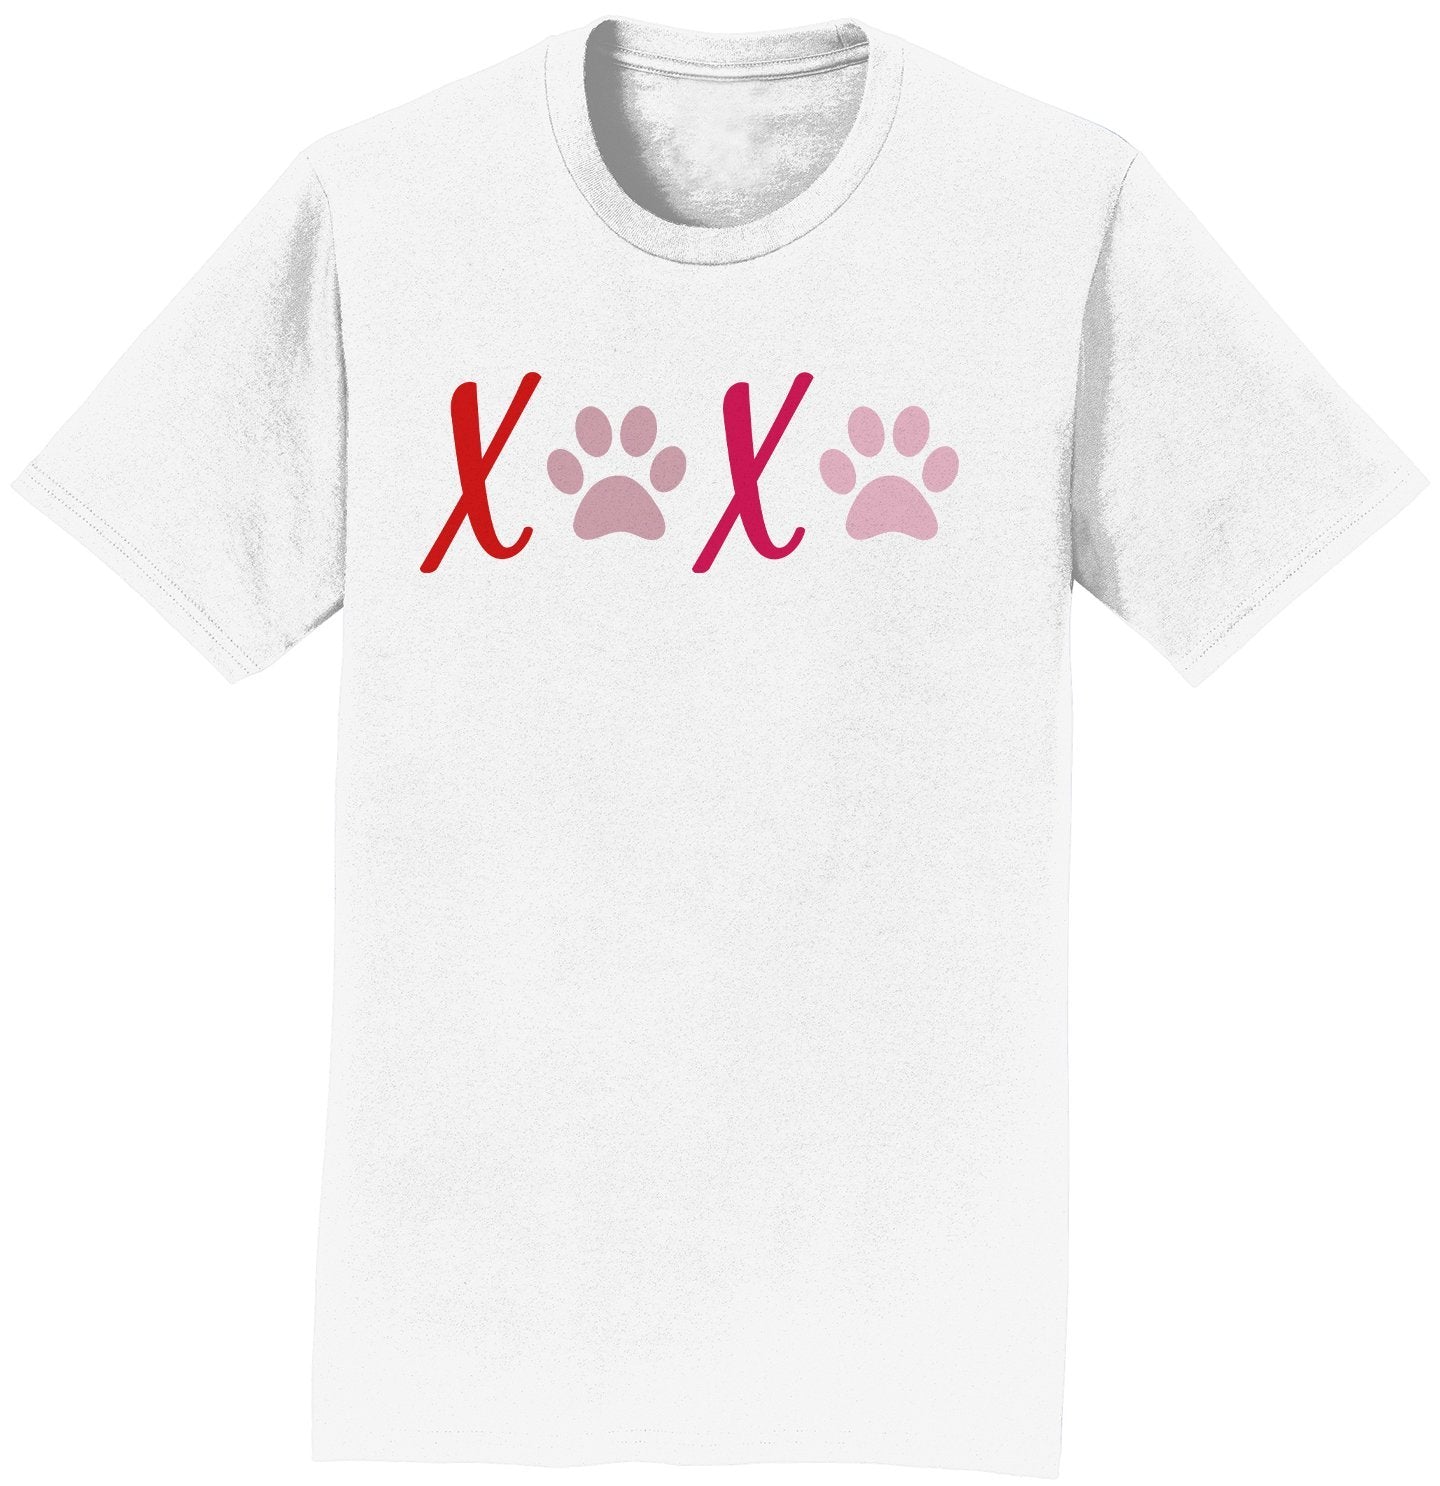 XOXO Paws - Adult Unisex T-Shirt